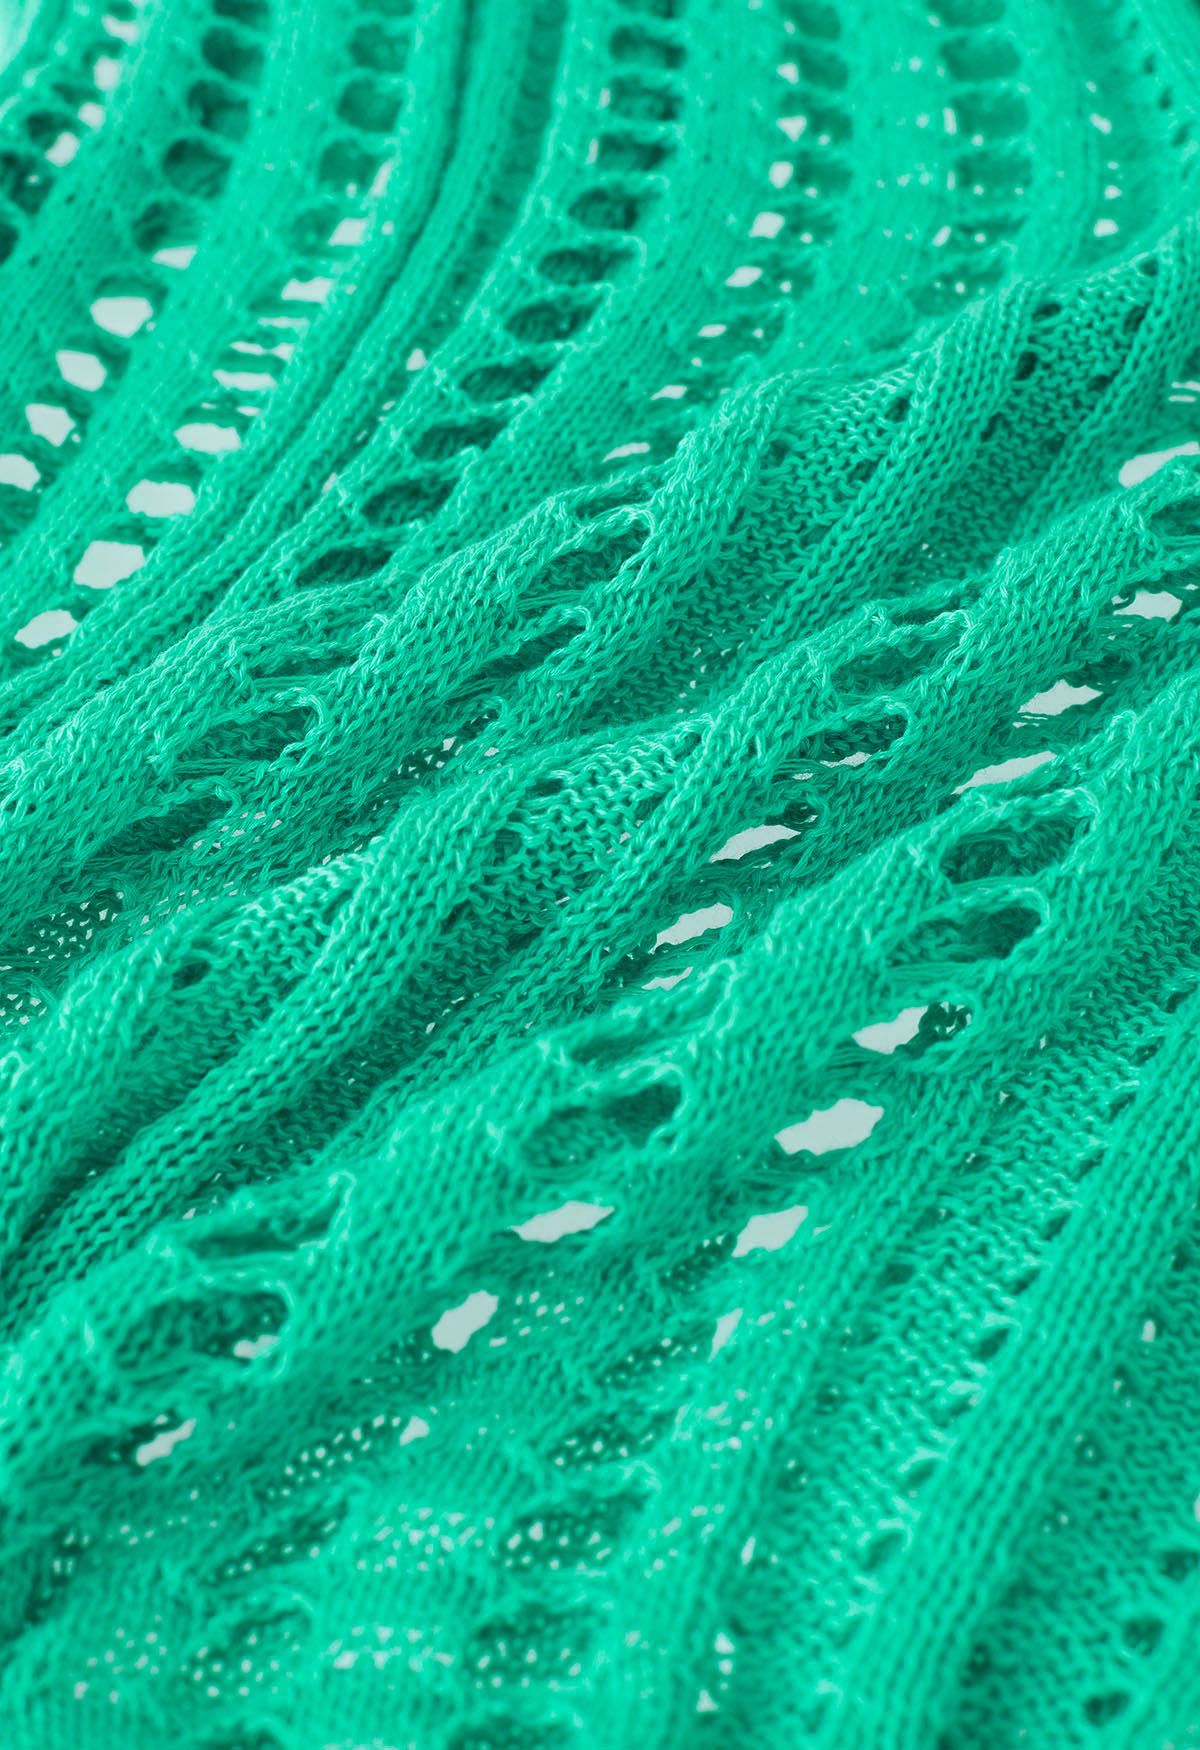 Couverture en tricot ajouré à fentes latérales en vert